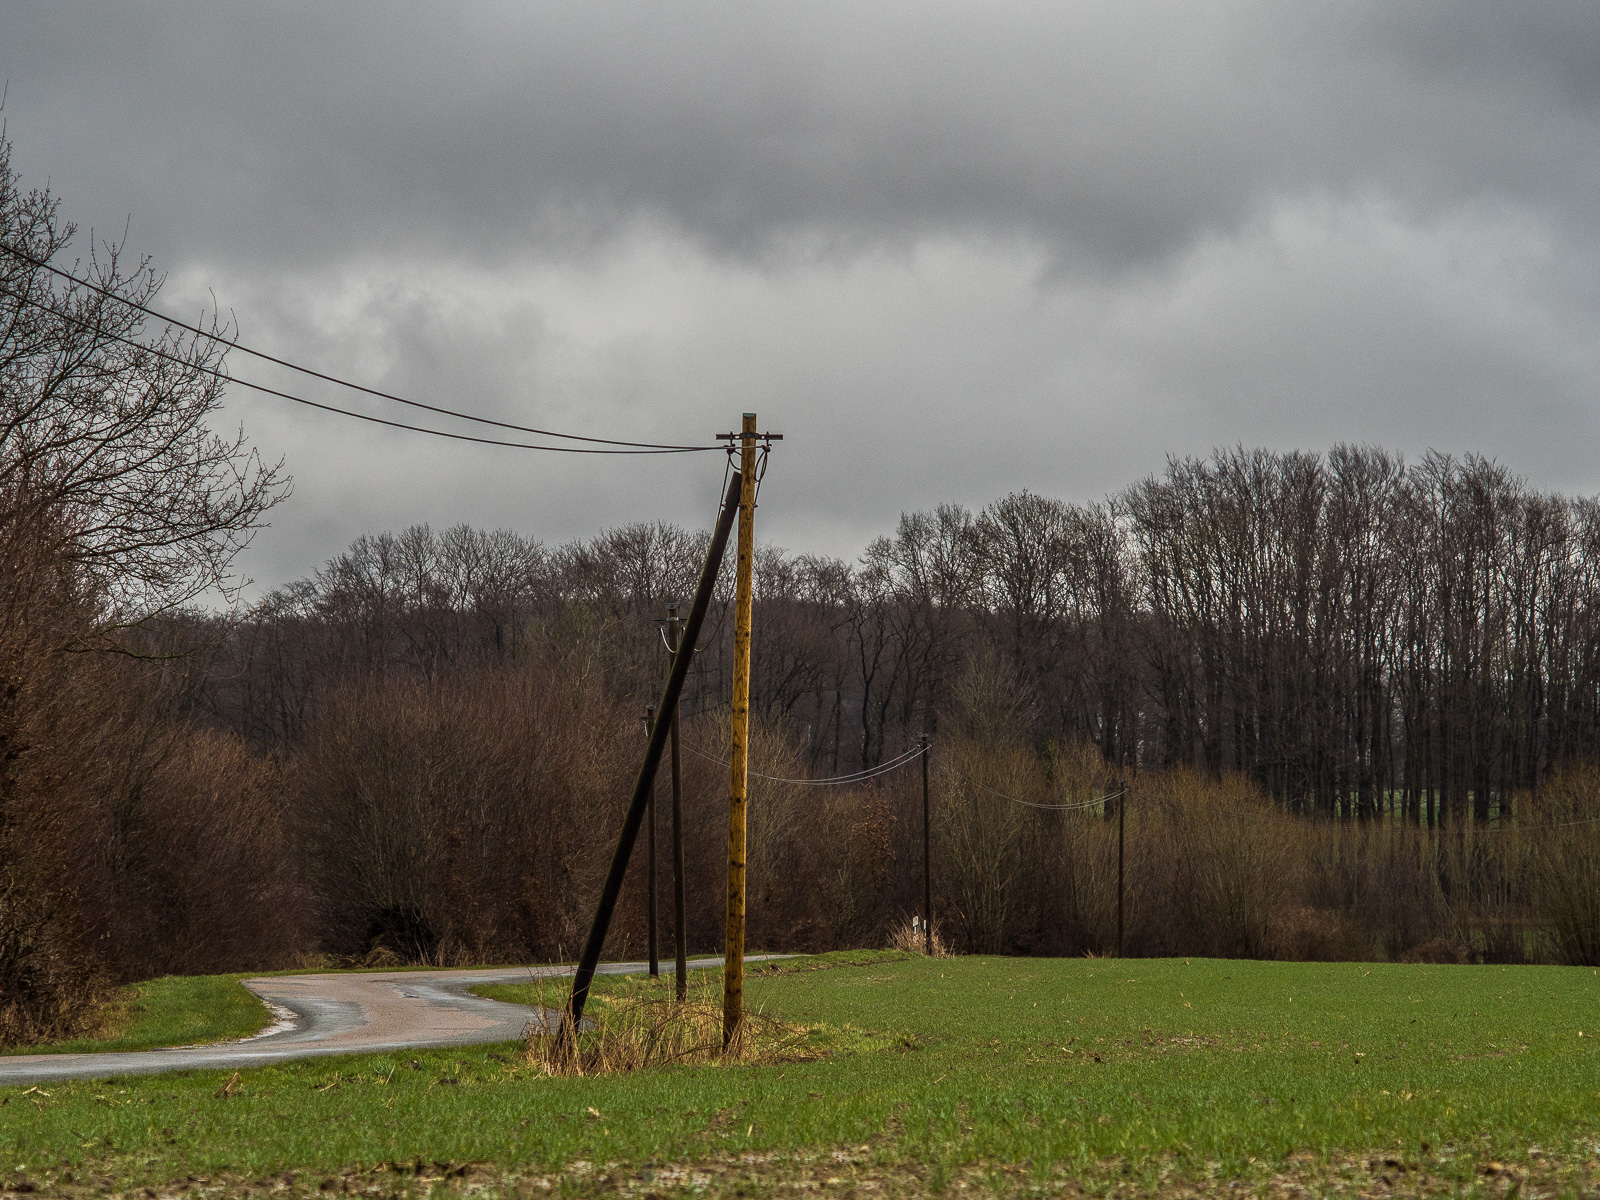 Blick in die Tiefe einer Landschaft längs einer von links ins Bild laufenden Landstraße, die von einer einfachen Leitung mit zwei Kabeln und dünnen Pfosten begleitet wird.